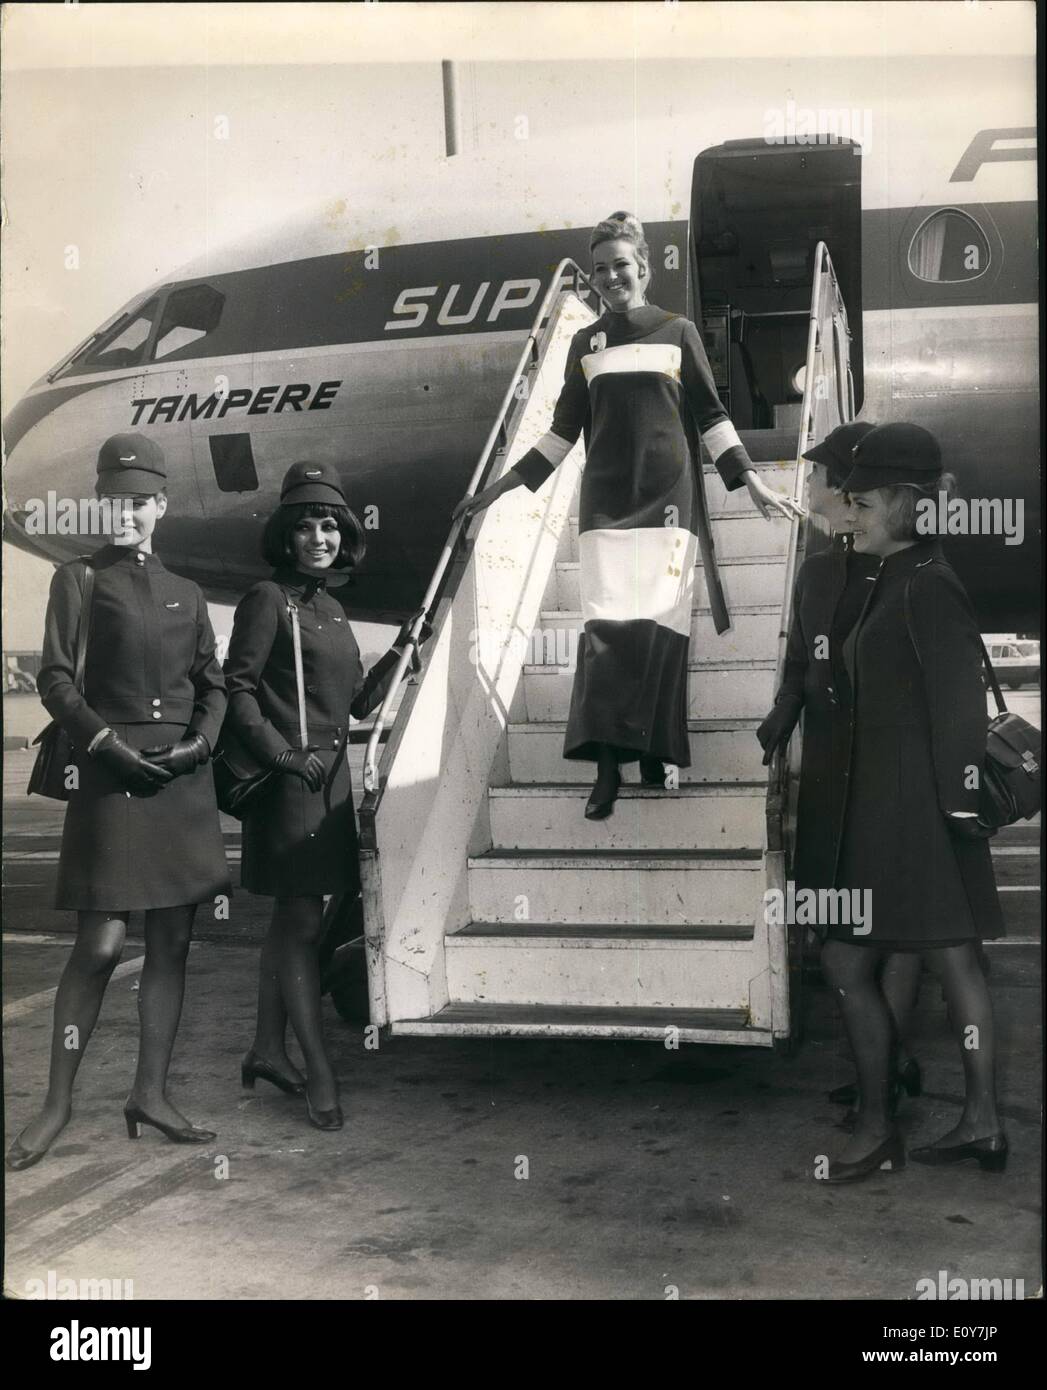 Avril 04, 1969 Binnair - hôtesses de l'air de montrer leurs nouveaux uniformes et de la levée de la mode finlandaise : Cinq des plus belles hôtesses de Finnair, y compris un ex-Miss Finlande, ont volé dans d'Helsinki aujourd'hui, et a donné un aperçu de la sélection de mode finlandais qui sera montré au cours de la 3ème. Finnish Fashion week à Londres le 14 avril. Les filles ont aussi leur nouvel uniforme Finnair. photo montre Barbro Storm quitte l'avion portant la robe qui sera portée par des hôtesses sur le finnier route transatlantique, regardée par d'autres hôtesses finlandais vêtus de leurs nouveaux uniformes Banque D'Images